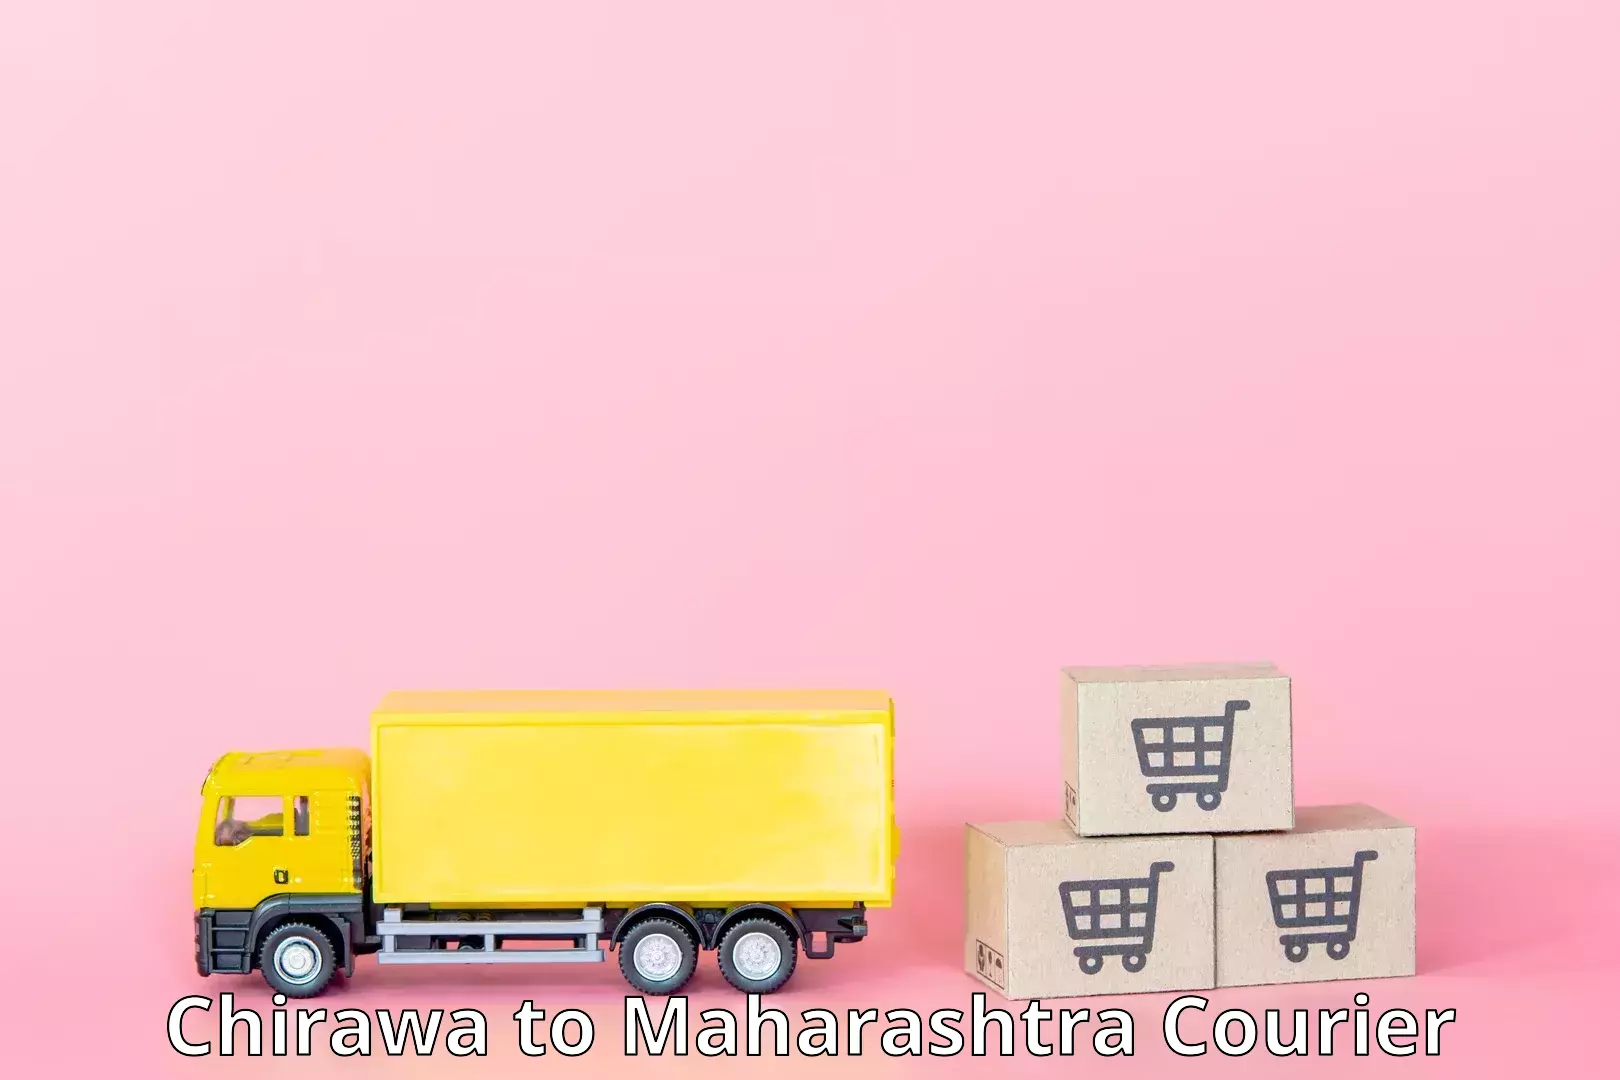 Door-to-door freight service Chirawa to Mahabaleshwar